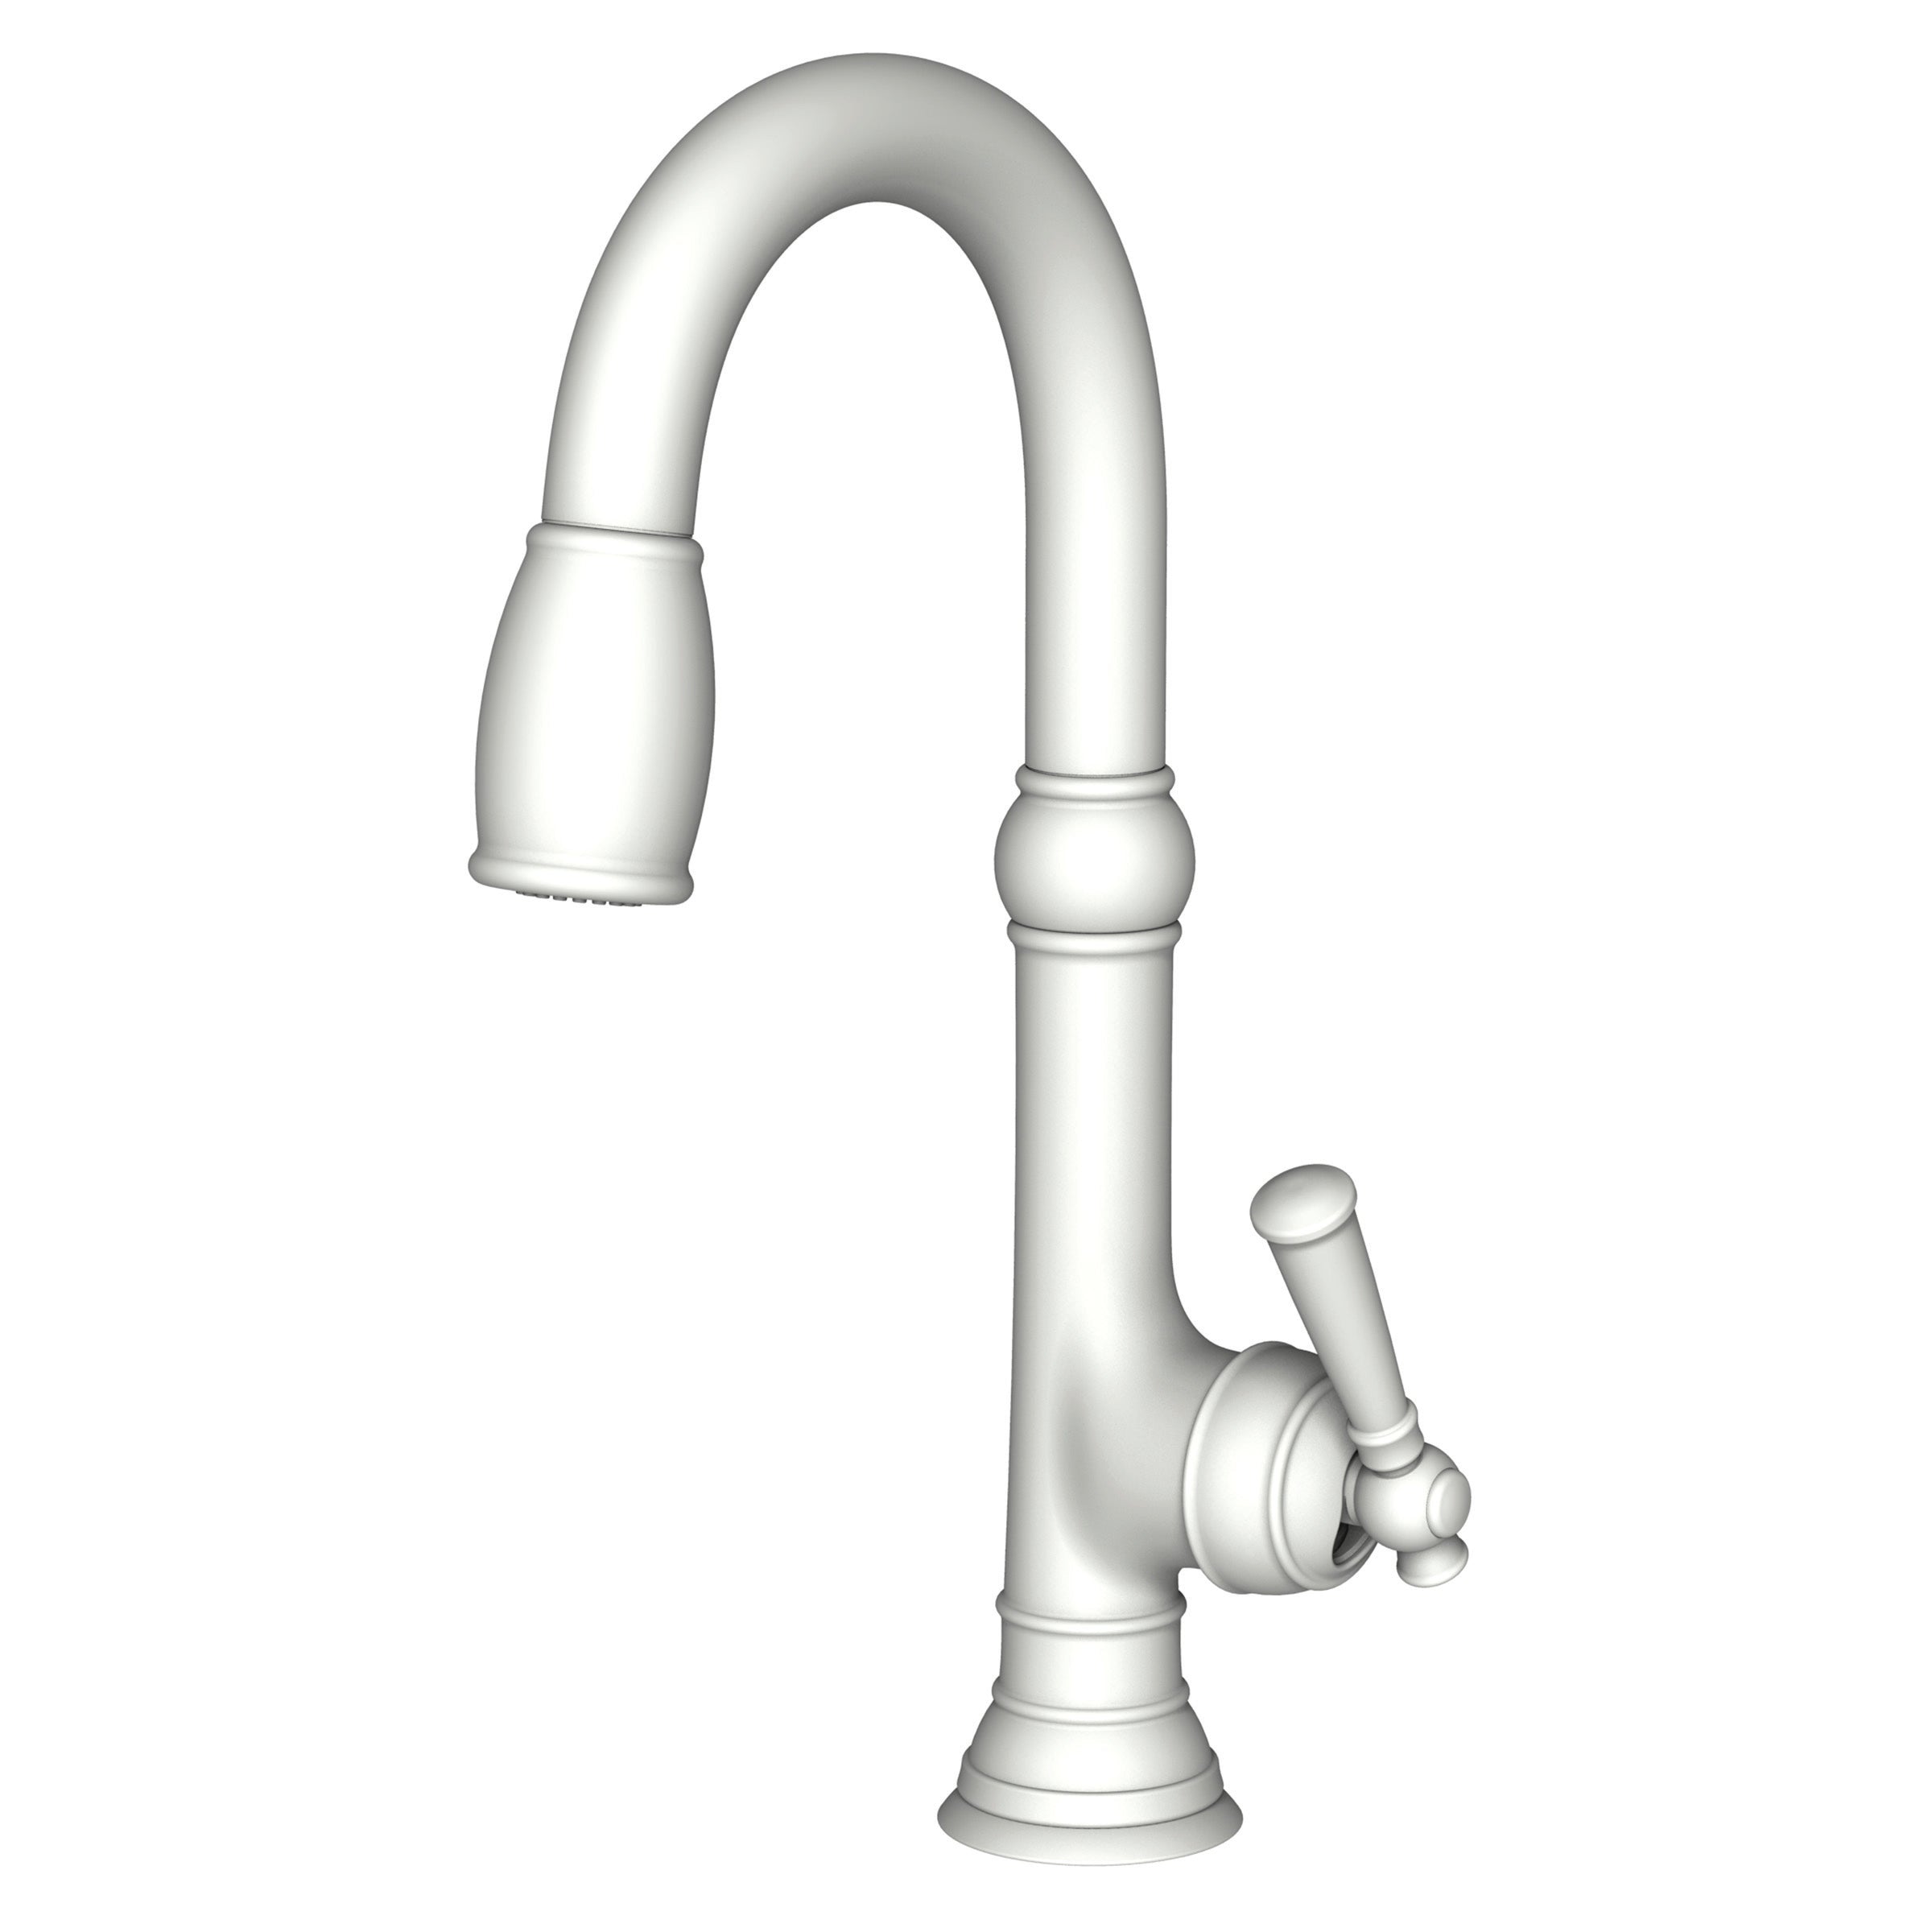 Newport Brass Jacobean Prep/Bar Pull Down Faucet